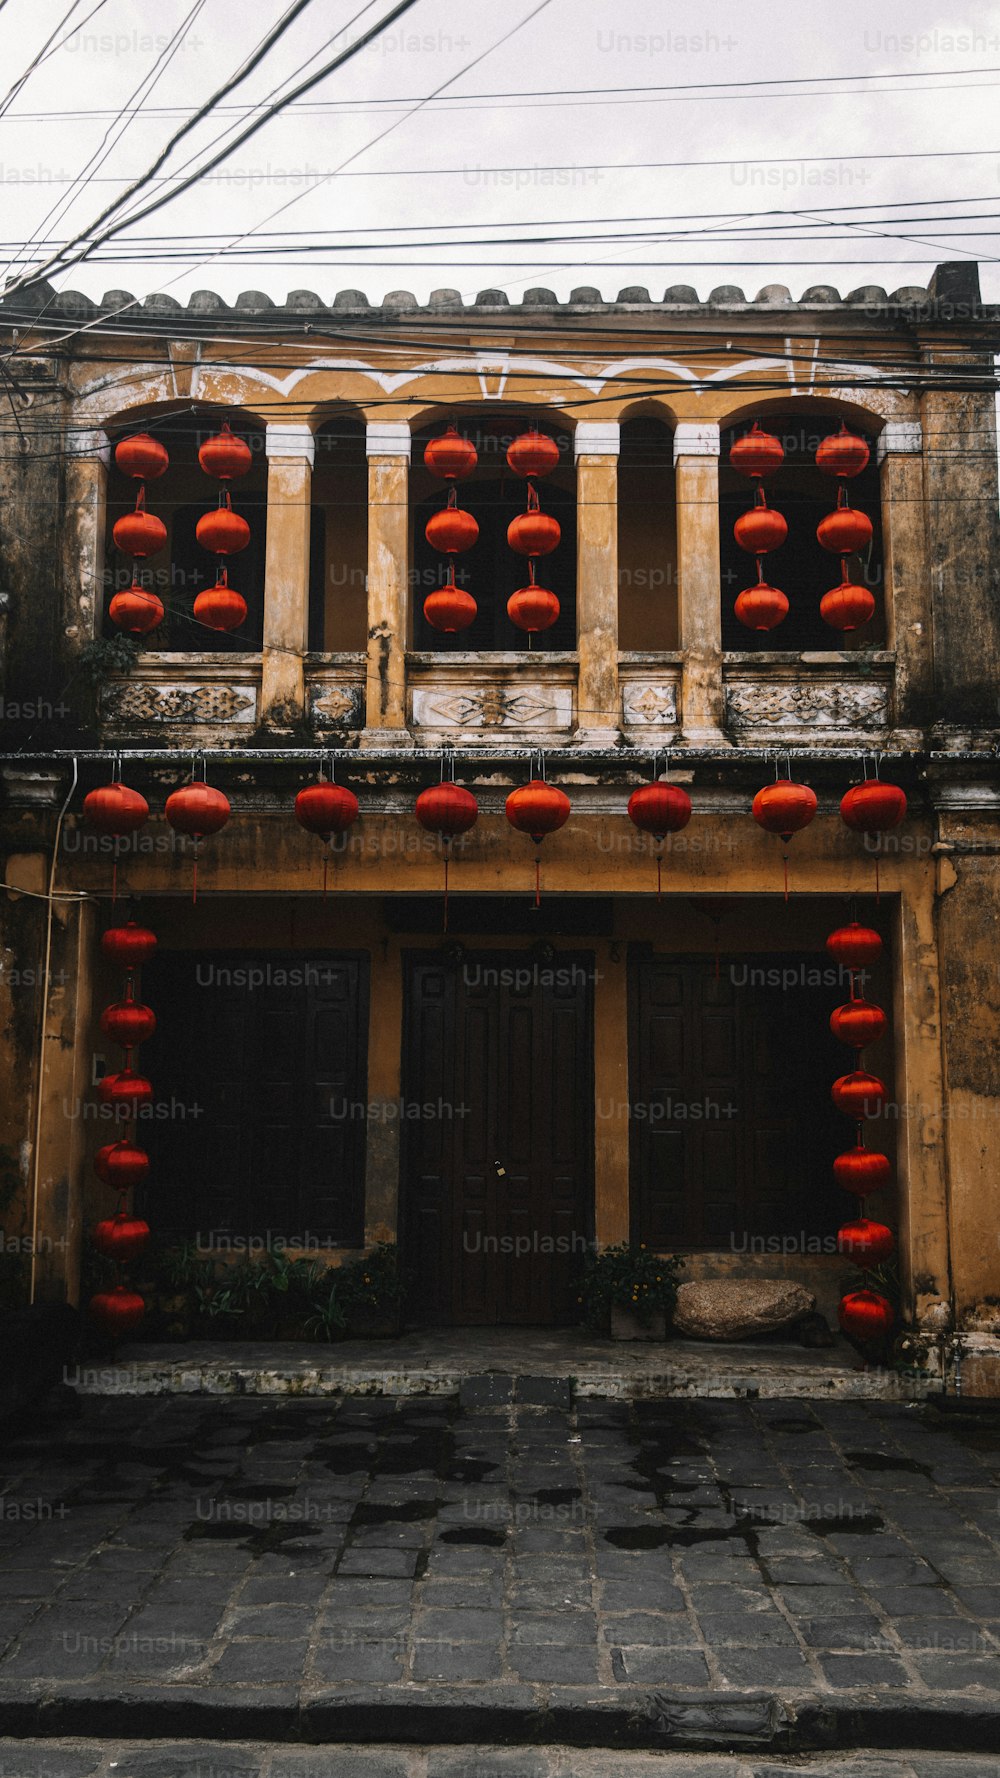 Un bâtiment avec des lanternes rouges suspendues à ses fenêtres